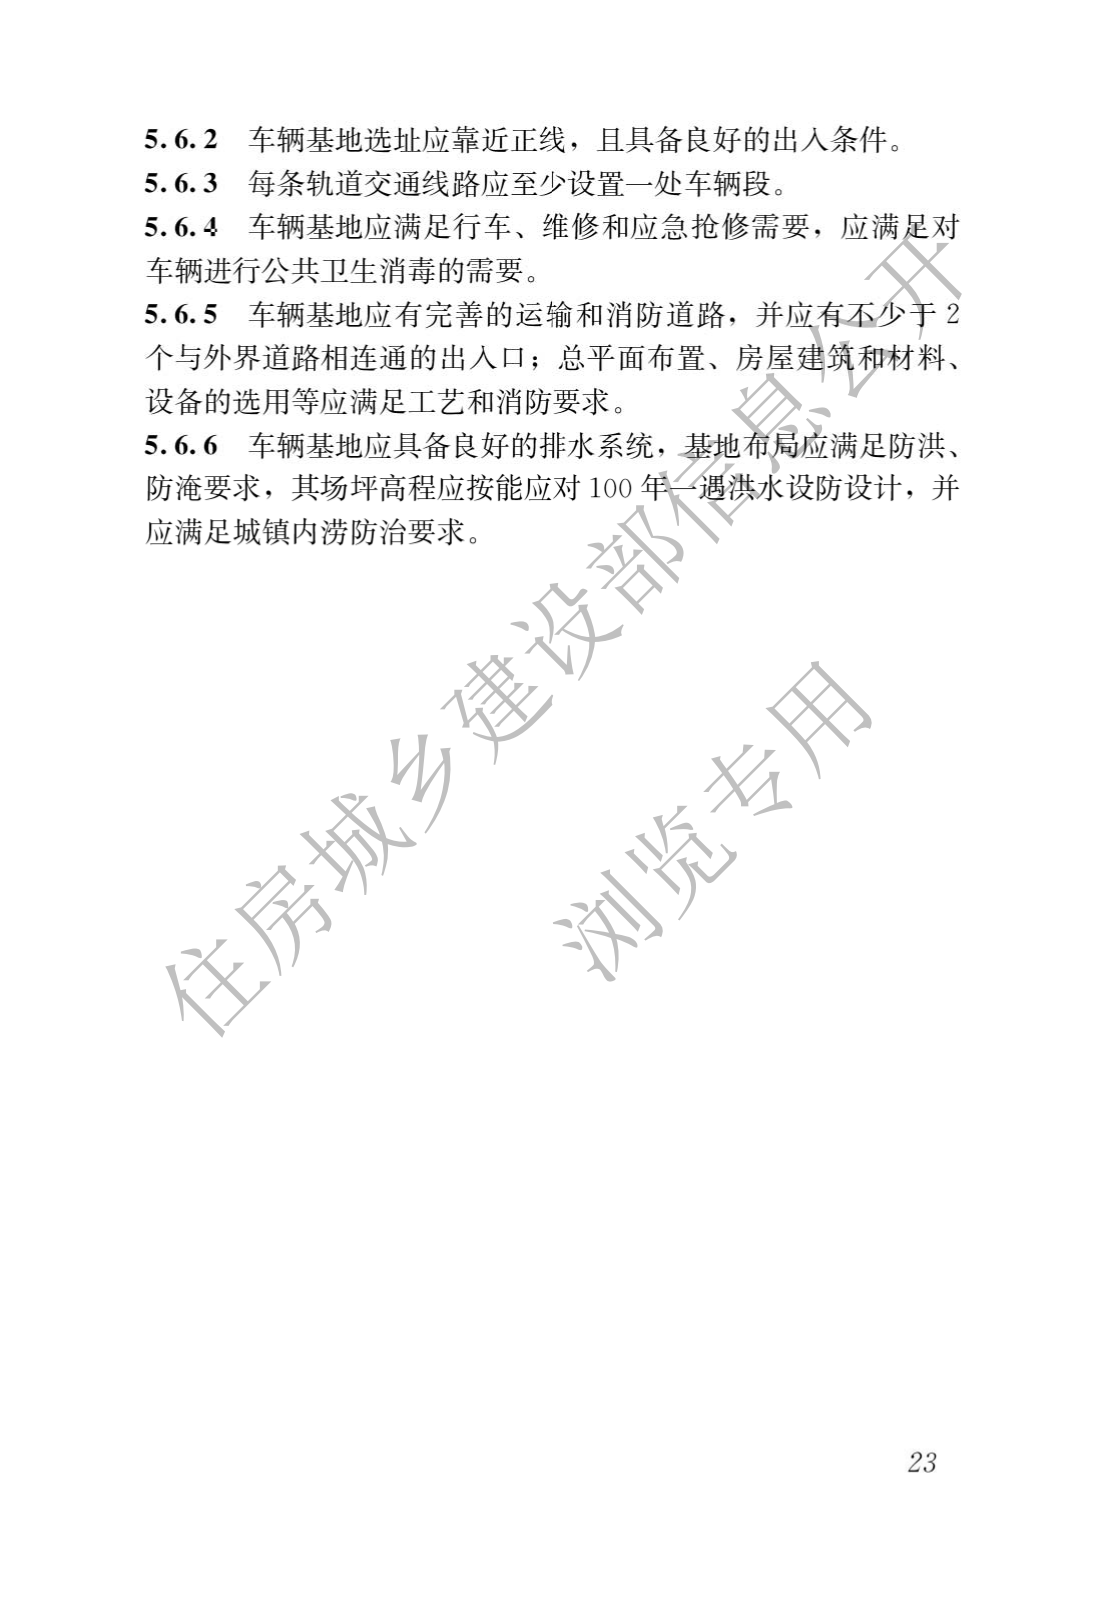 住房和城鄉建設部關于發布國家标準 《城市軌道交通工(gōng)程項目規範》的公告(圖27)